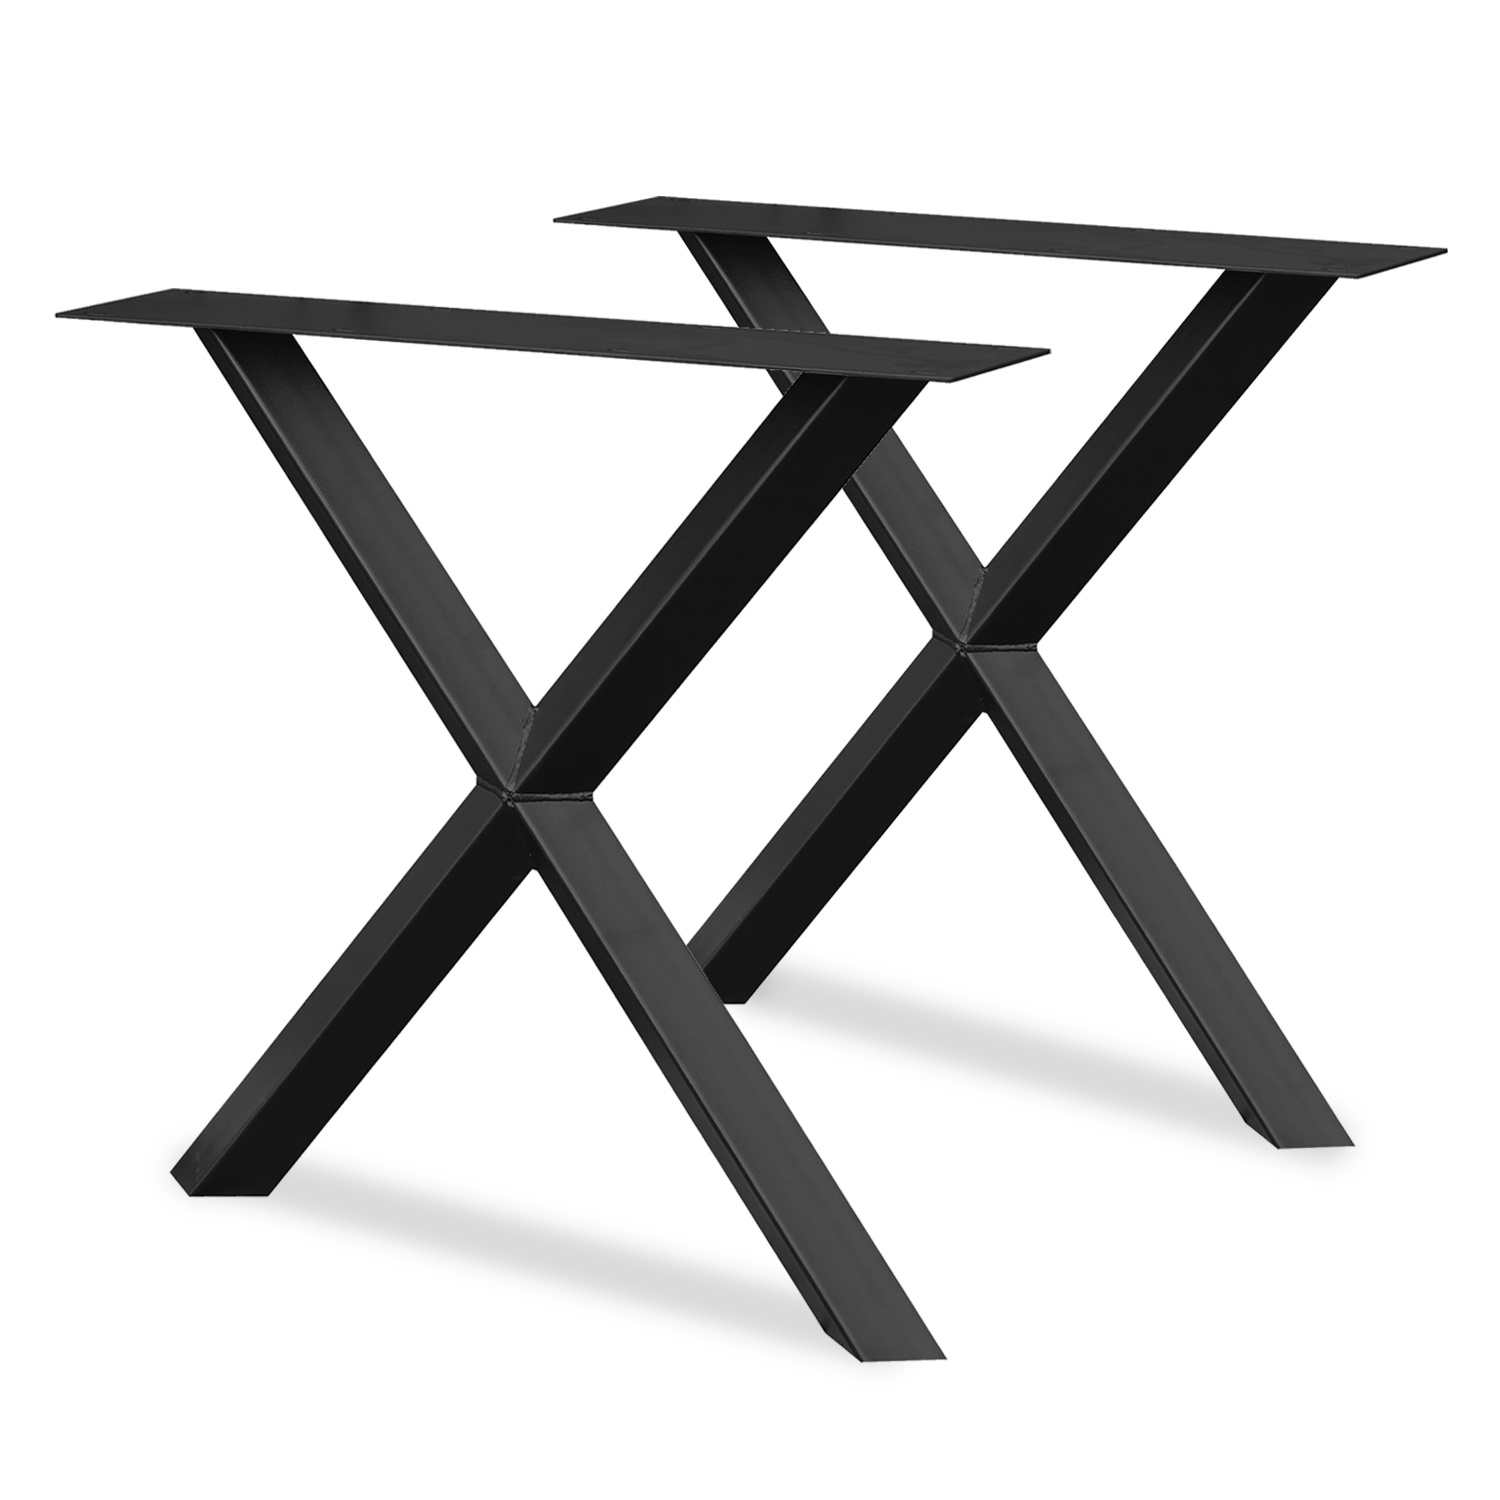  Stalen X-ster tafelpoten ELEGANT (SET) 5,5x5,5 cm - 78 cm breed - 72 cm hoog - Kruispoot ster - GEPOEDERCOAT Zwart